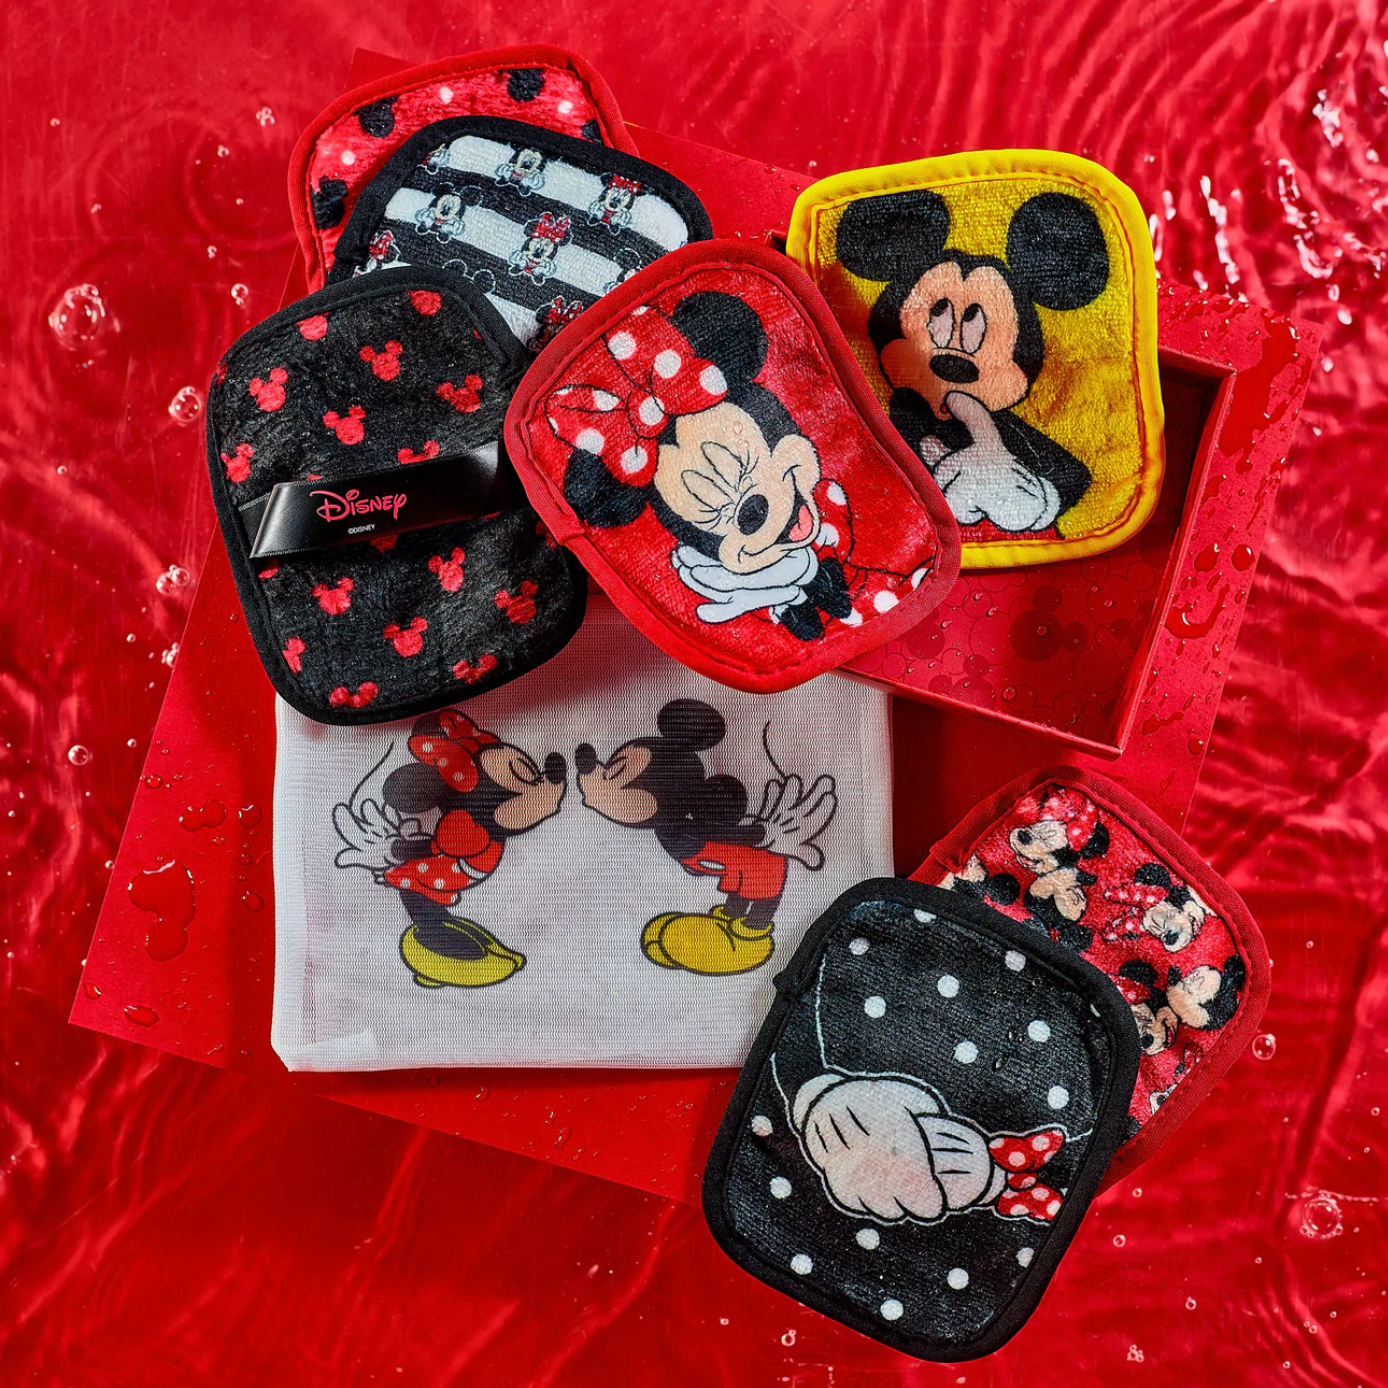 MakeUp Eraser - 7 Day Set - Mickey & Minnie